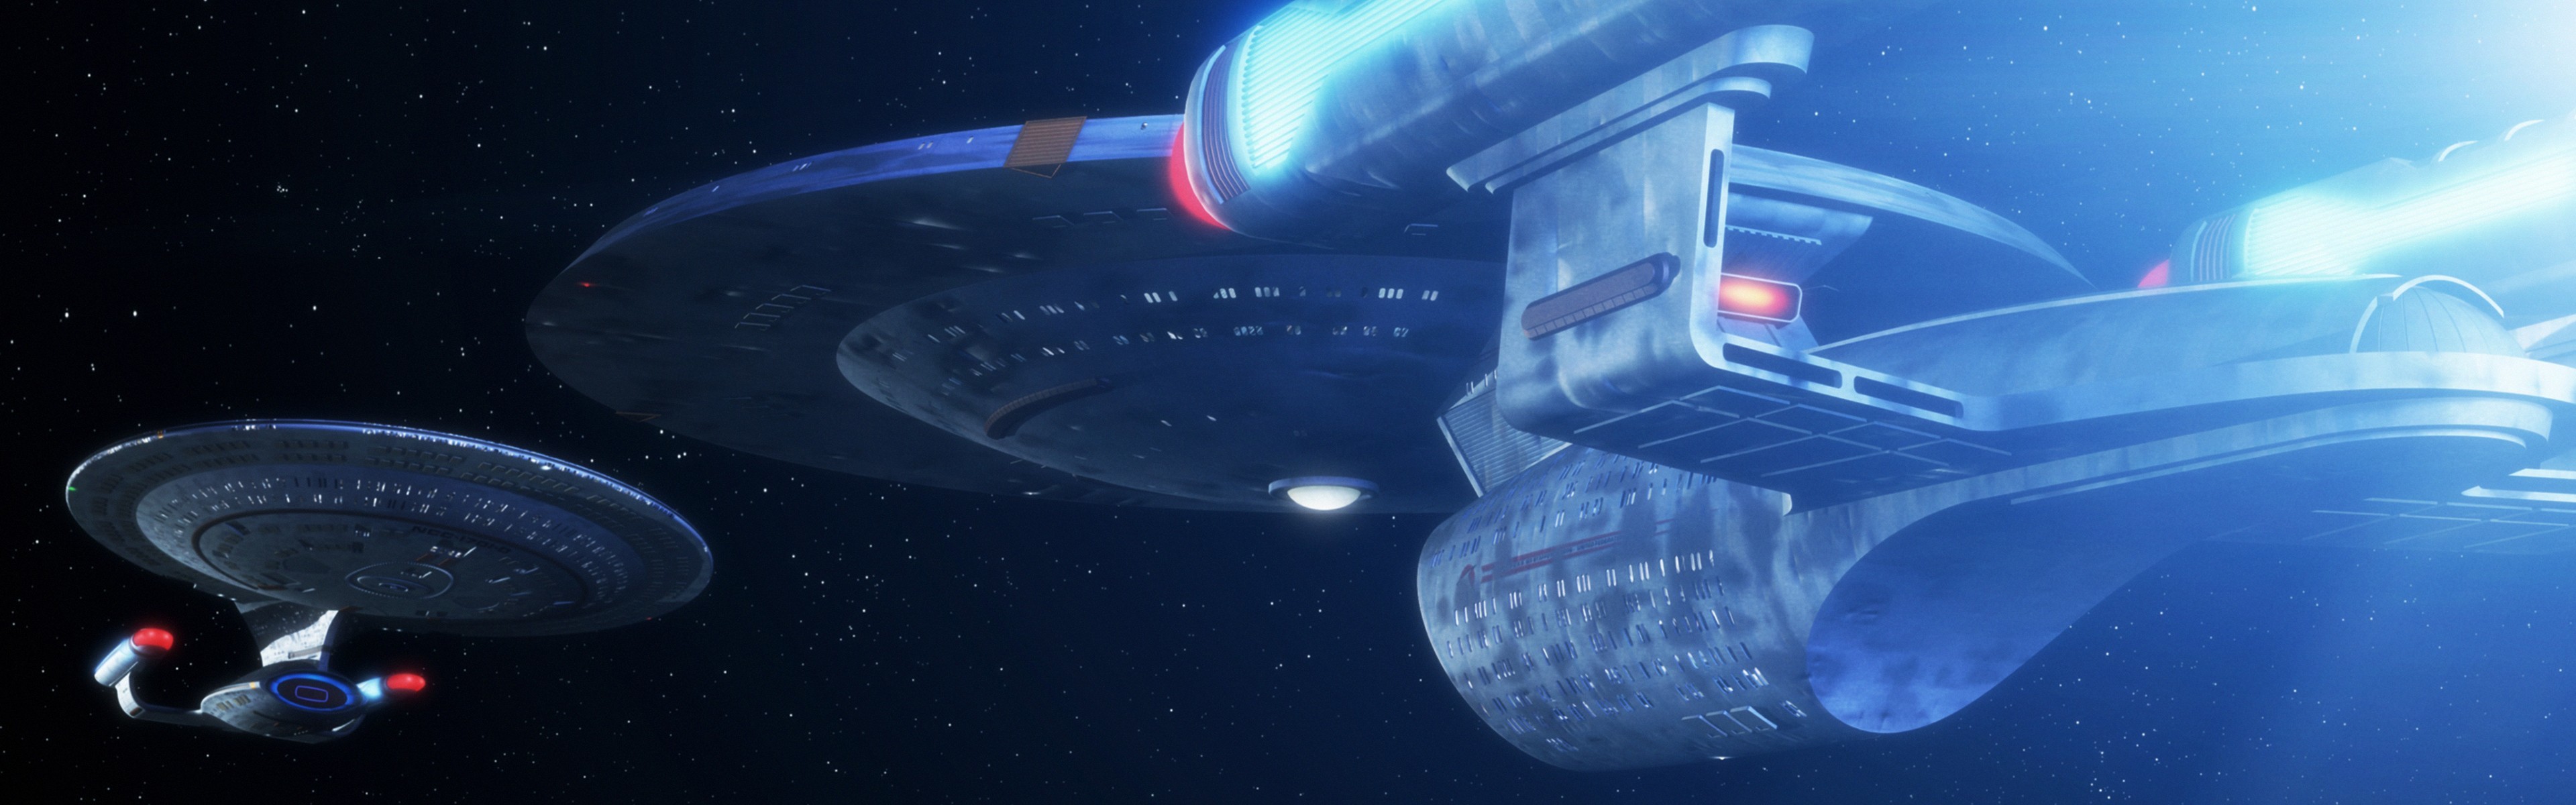 General Star Trek USS Enterprise spaceship dual monitors multiple display space